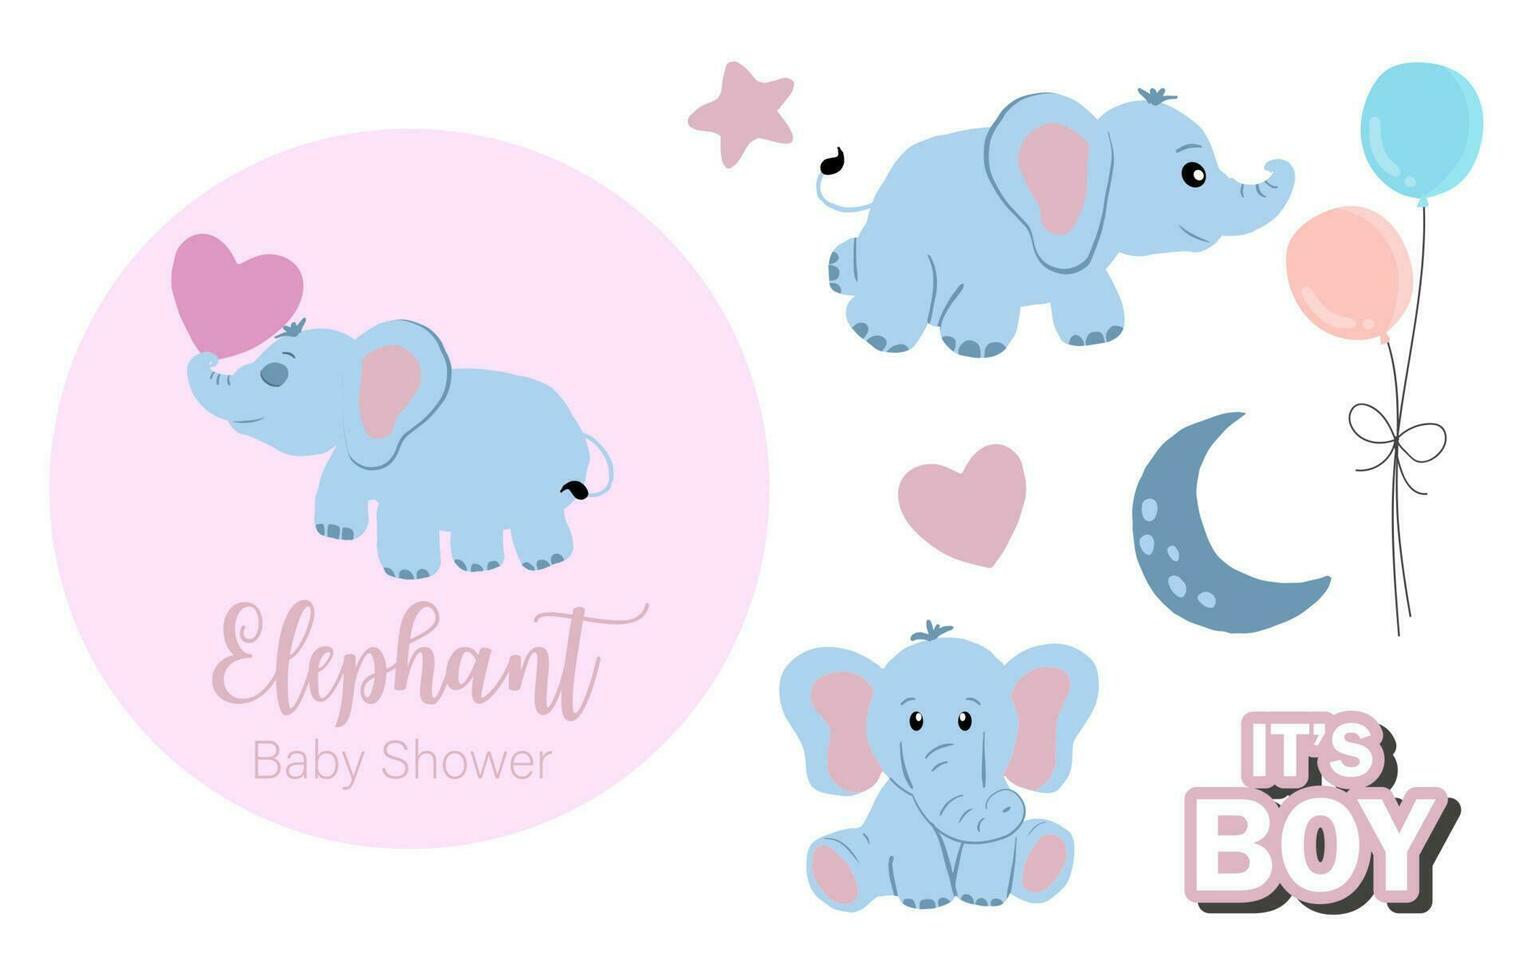 bebê elefante objeto com estrela, coração, balão para aniversário cartão postal vetor